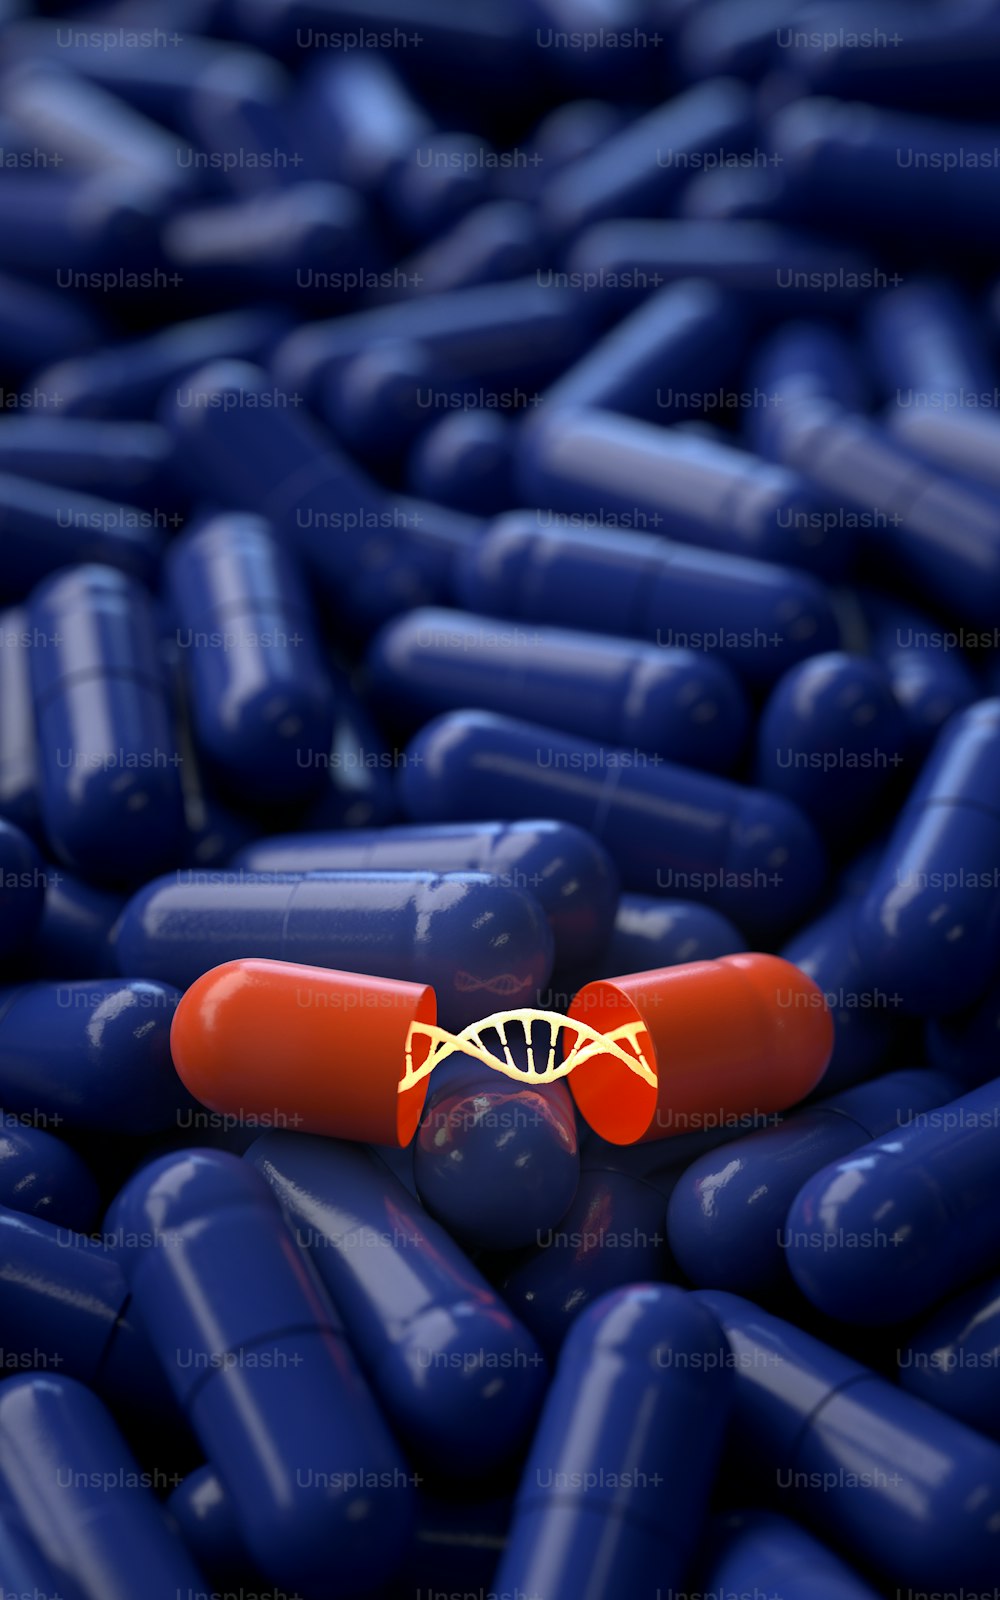 cápsulas médicas con molécula de ADN, renderizado 3D, imagen conceptual.